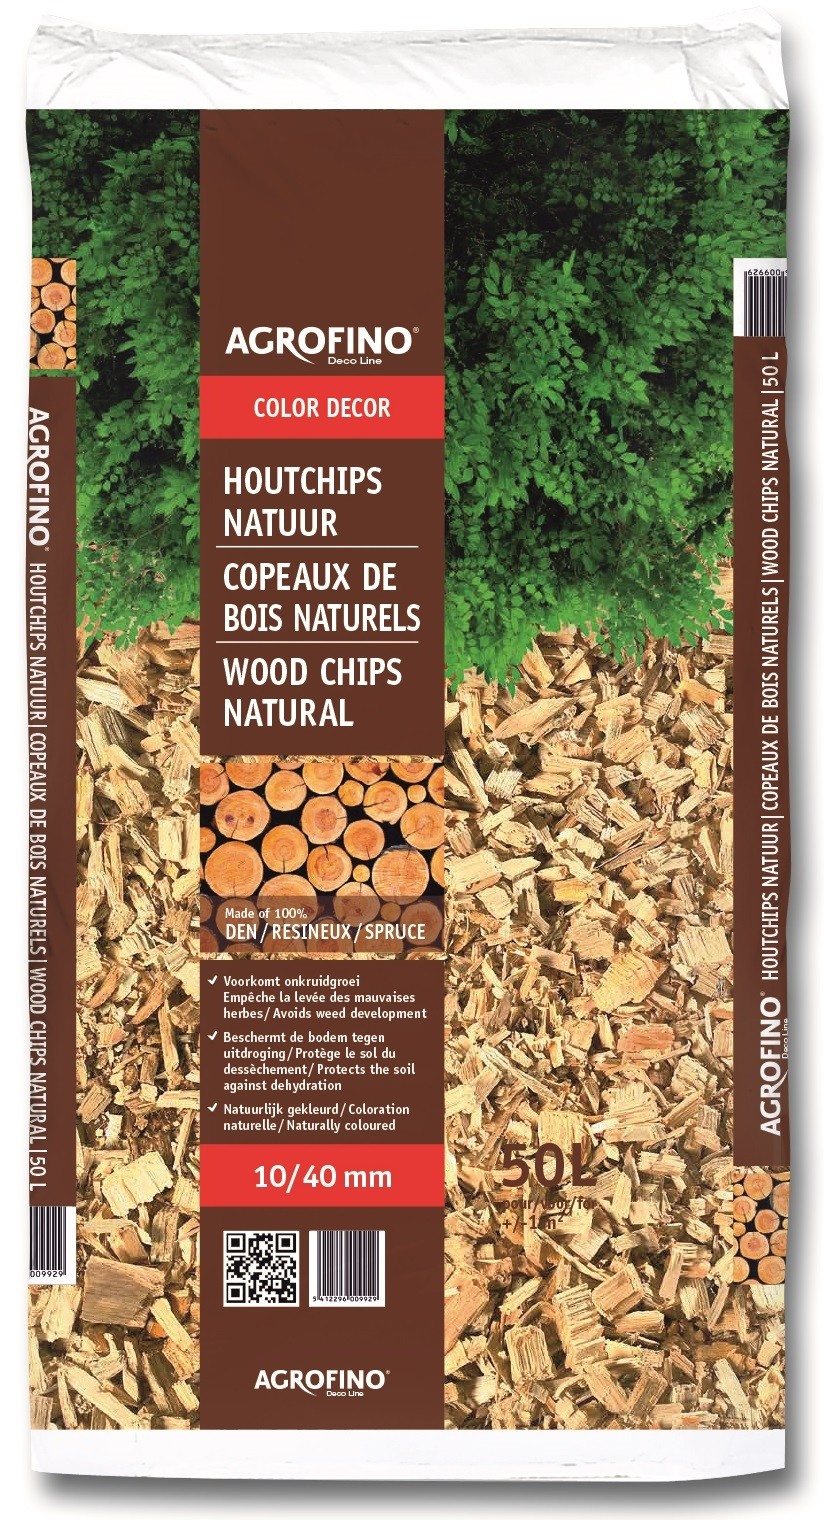 Copeaux de bois naturels 50 L AGROFINO